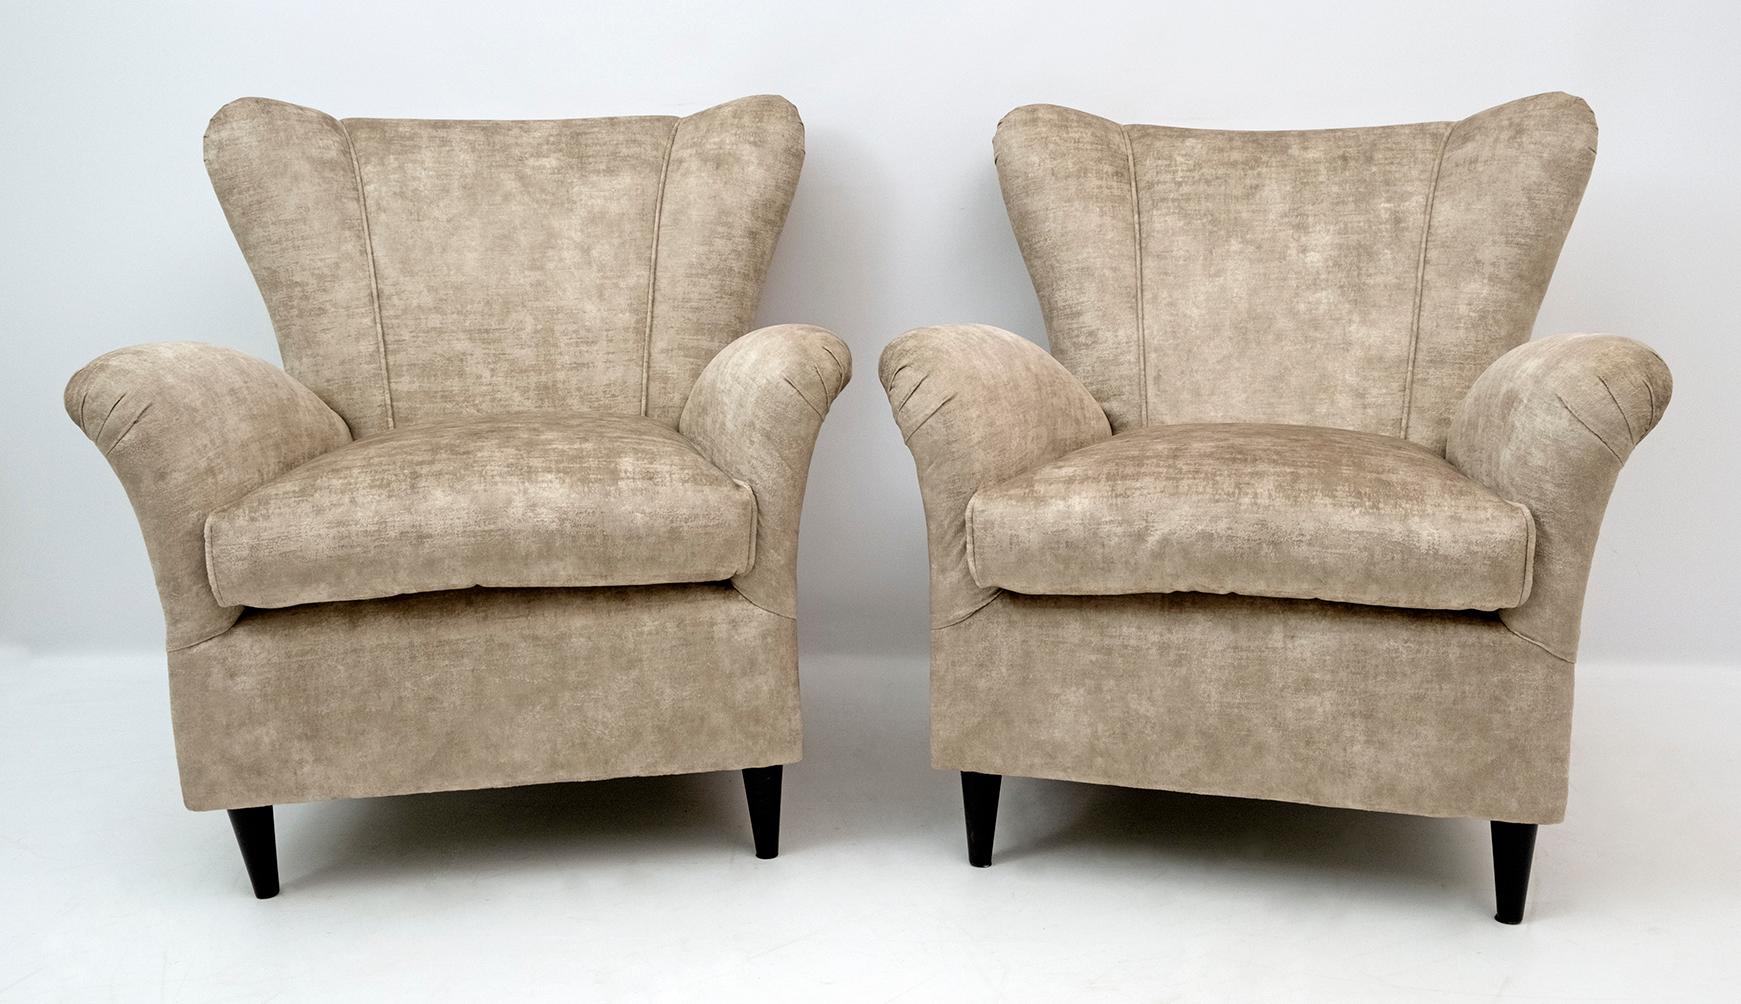 Elegantes und prächtiges Paar moderner Sessel aus der Jahrhundertmitte, Gio Ponti zugeschrieben, 1950 für ISA Editions, Bergamo. Geformtes Profil, raffinierte Linien, sinnlicher und tiefer Komfort. Die Stühle sind mit einem neuen Samtbezug im